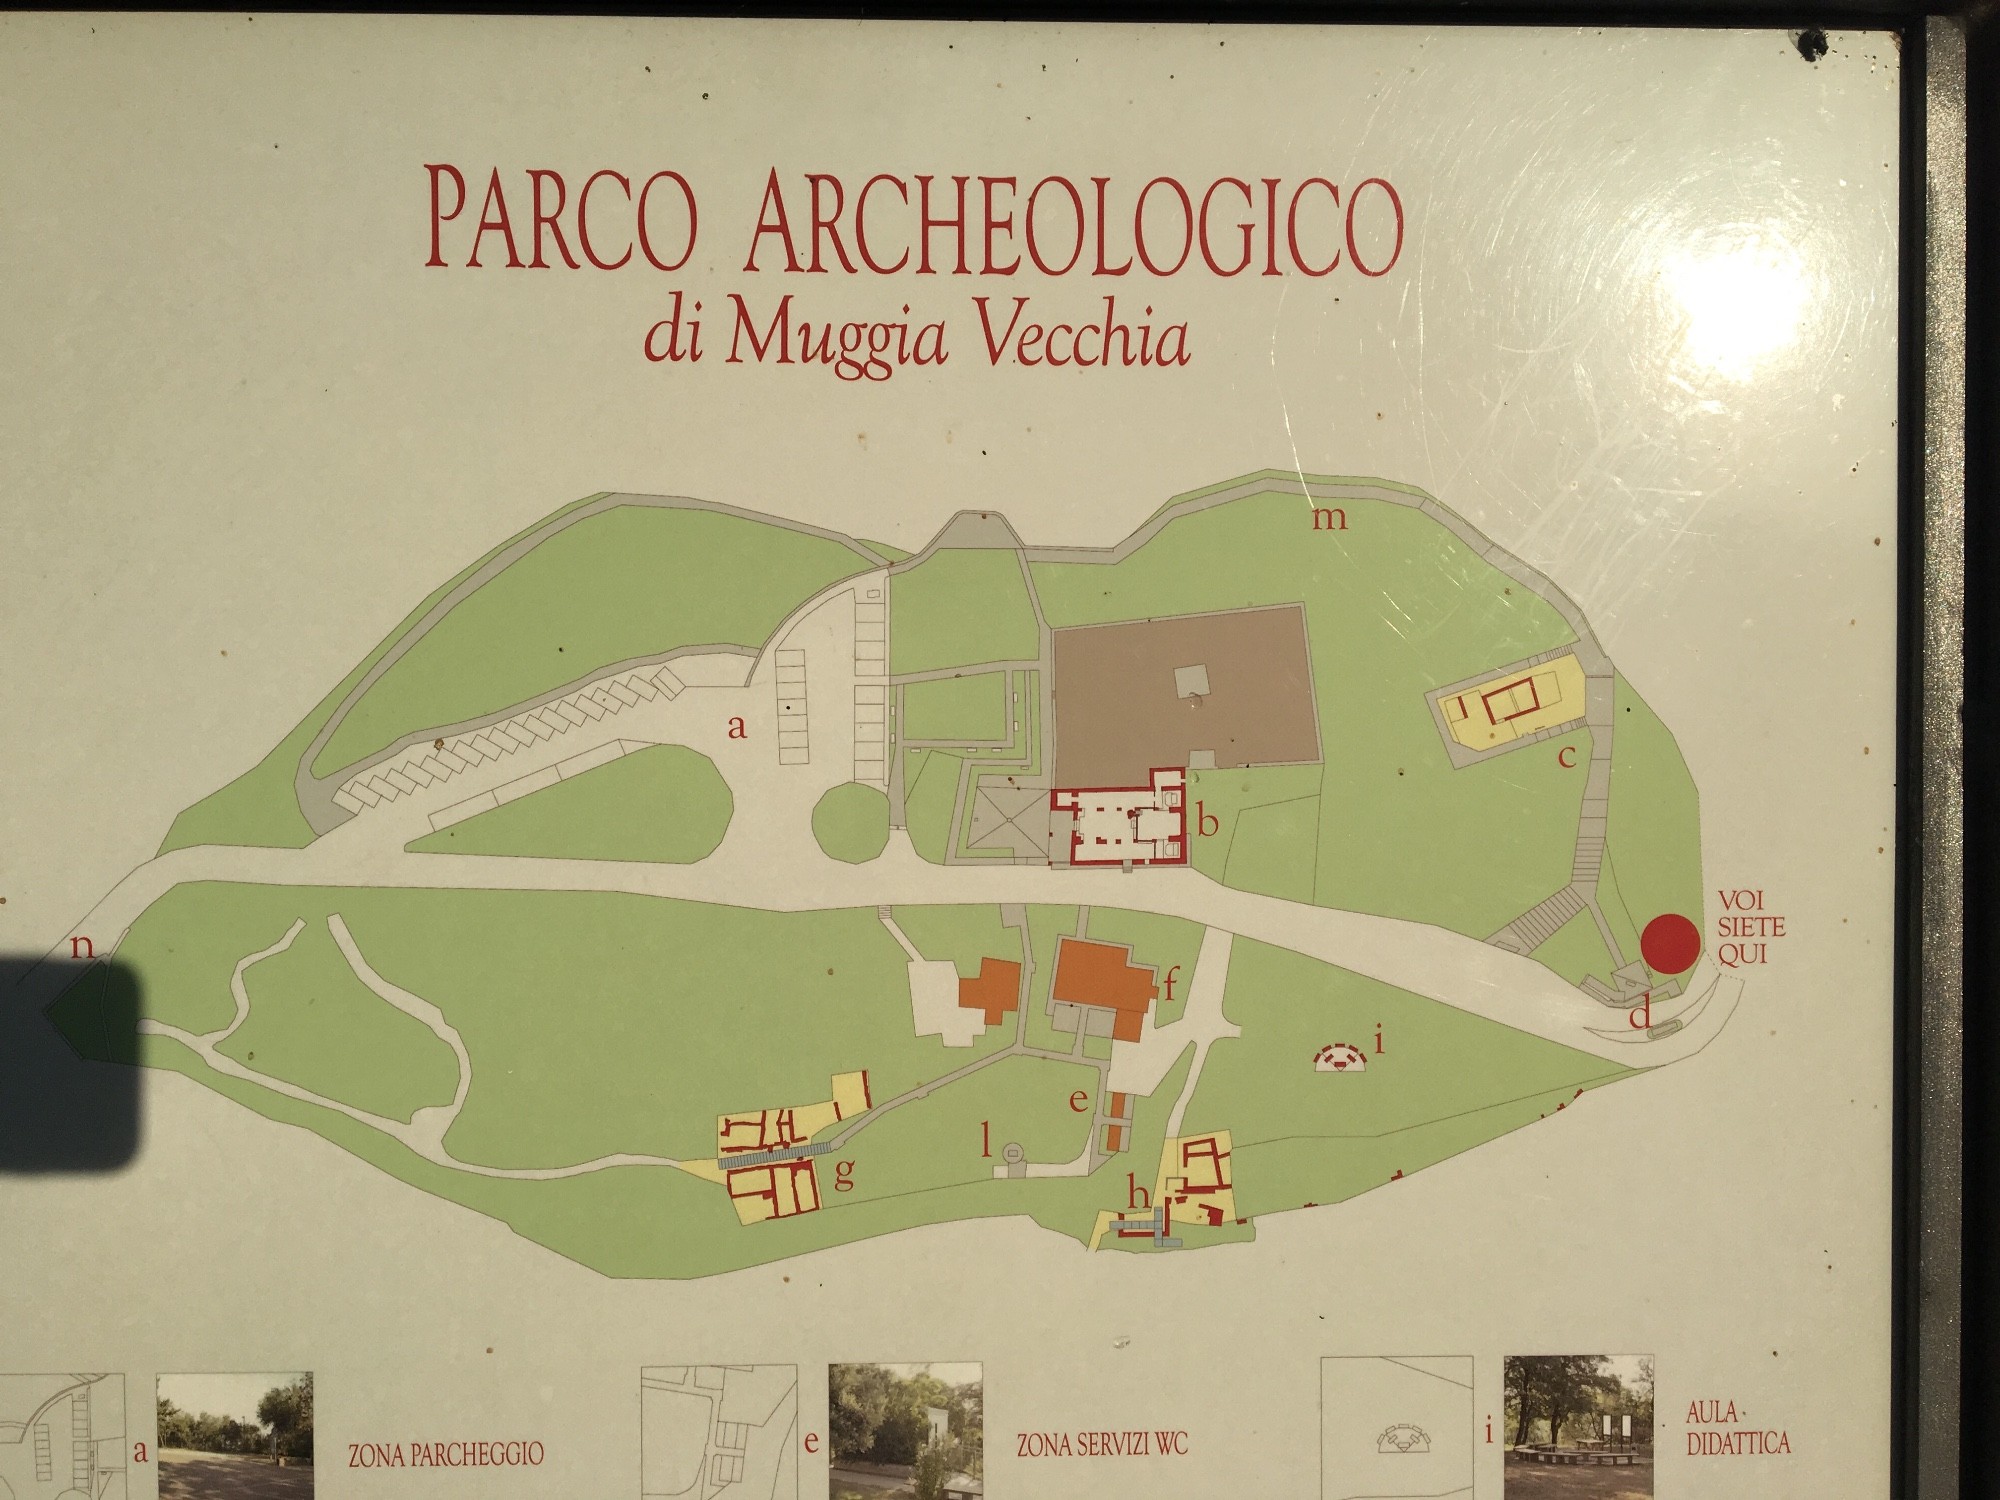 Parco archeologico di Muggia Vecchia, Italy